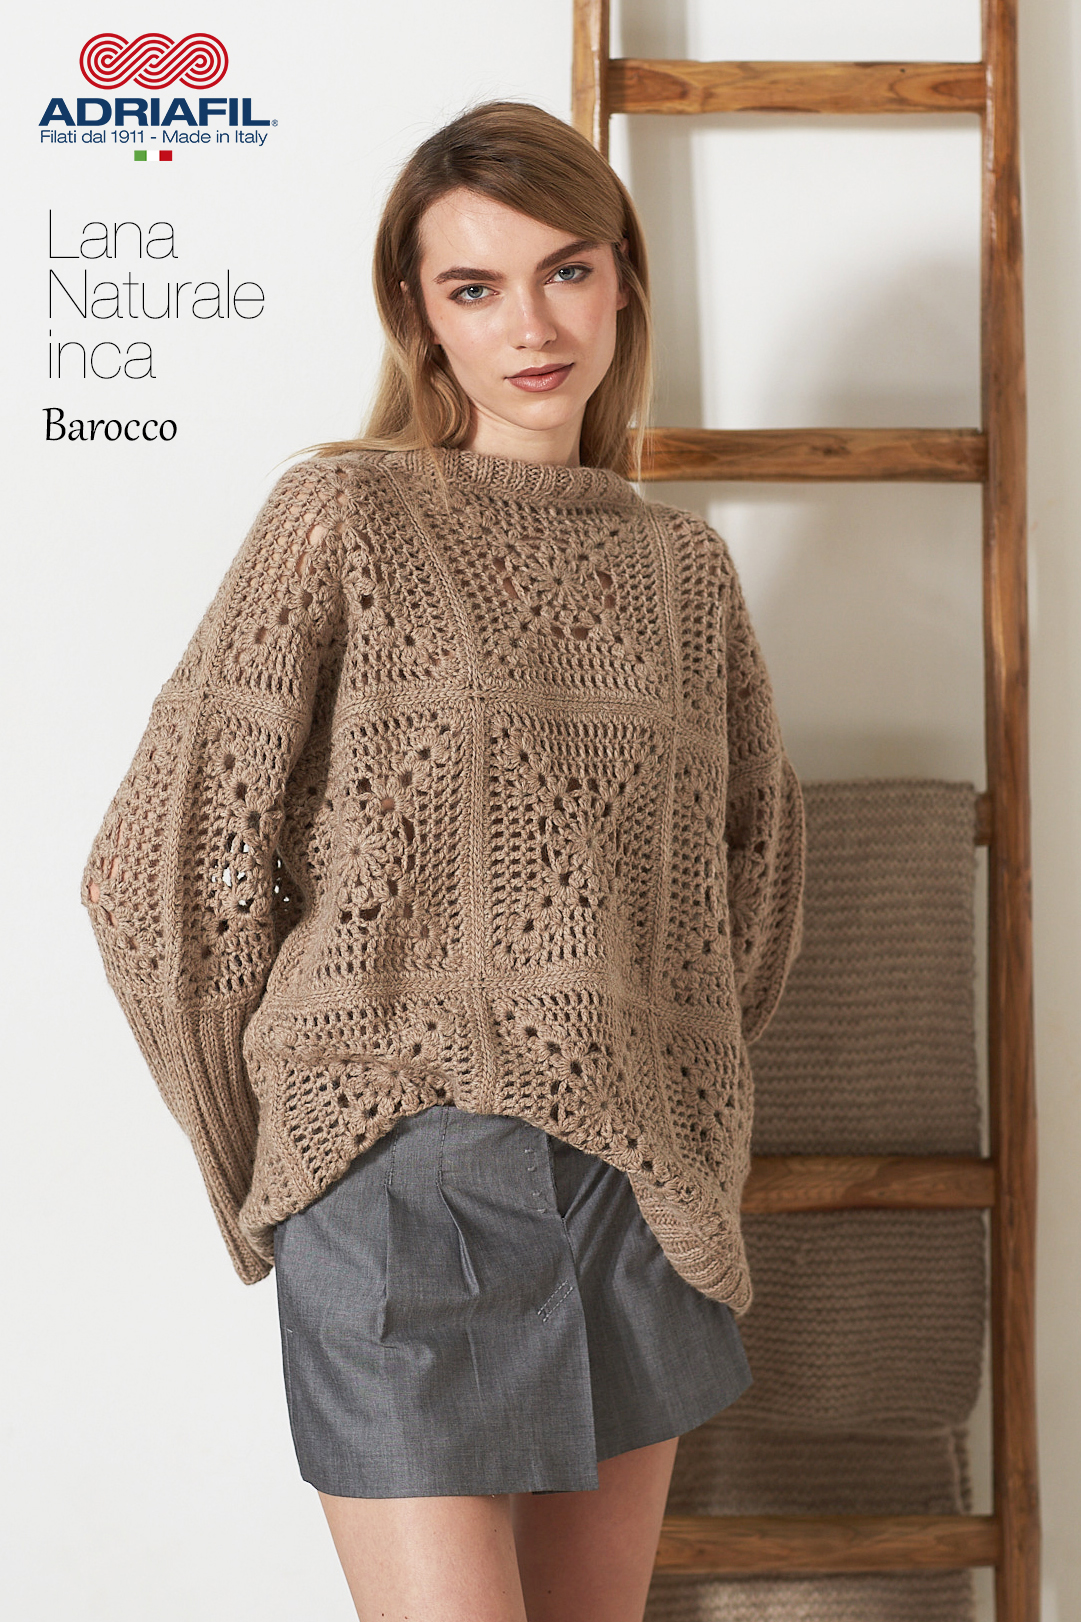 Lana Naturale Inca “Barocco” pullover